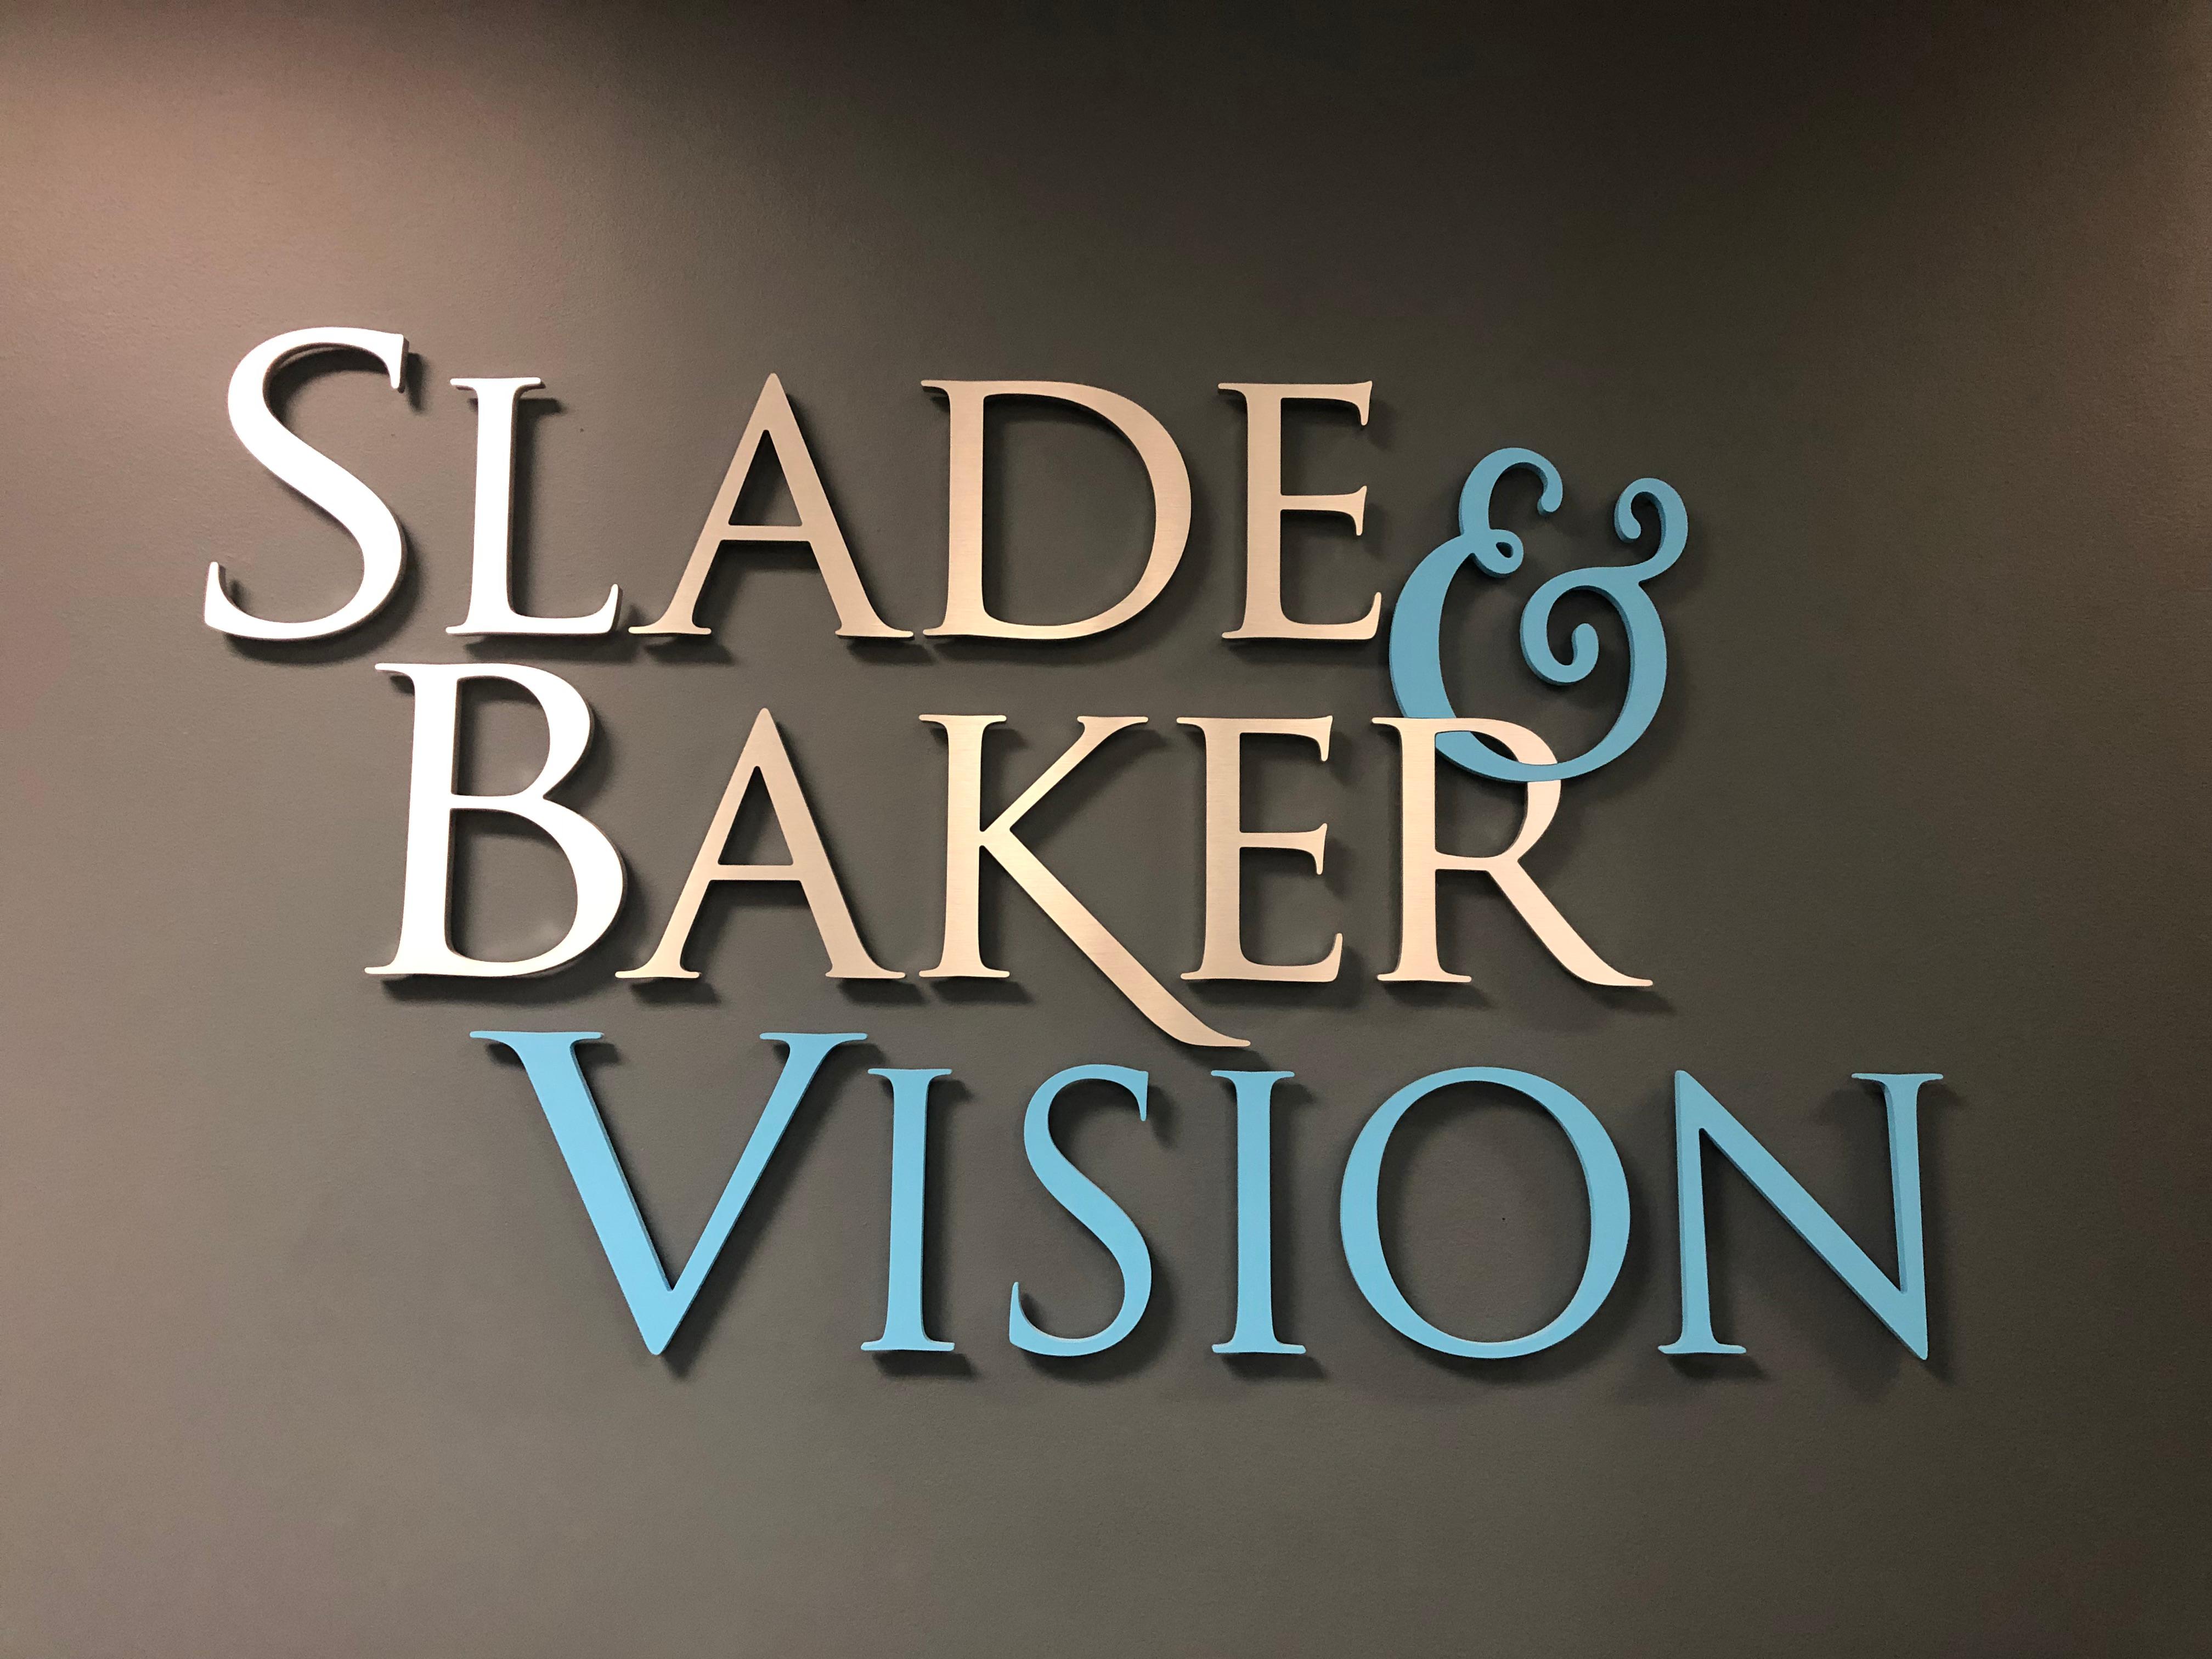 Slade & Baker Vision - Houston Office Photo